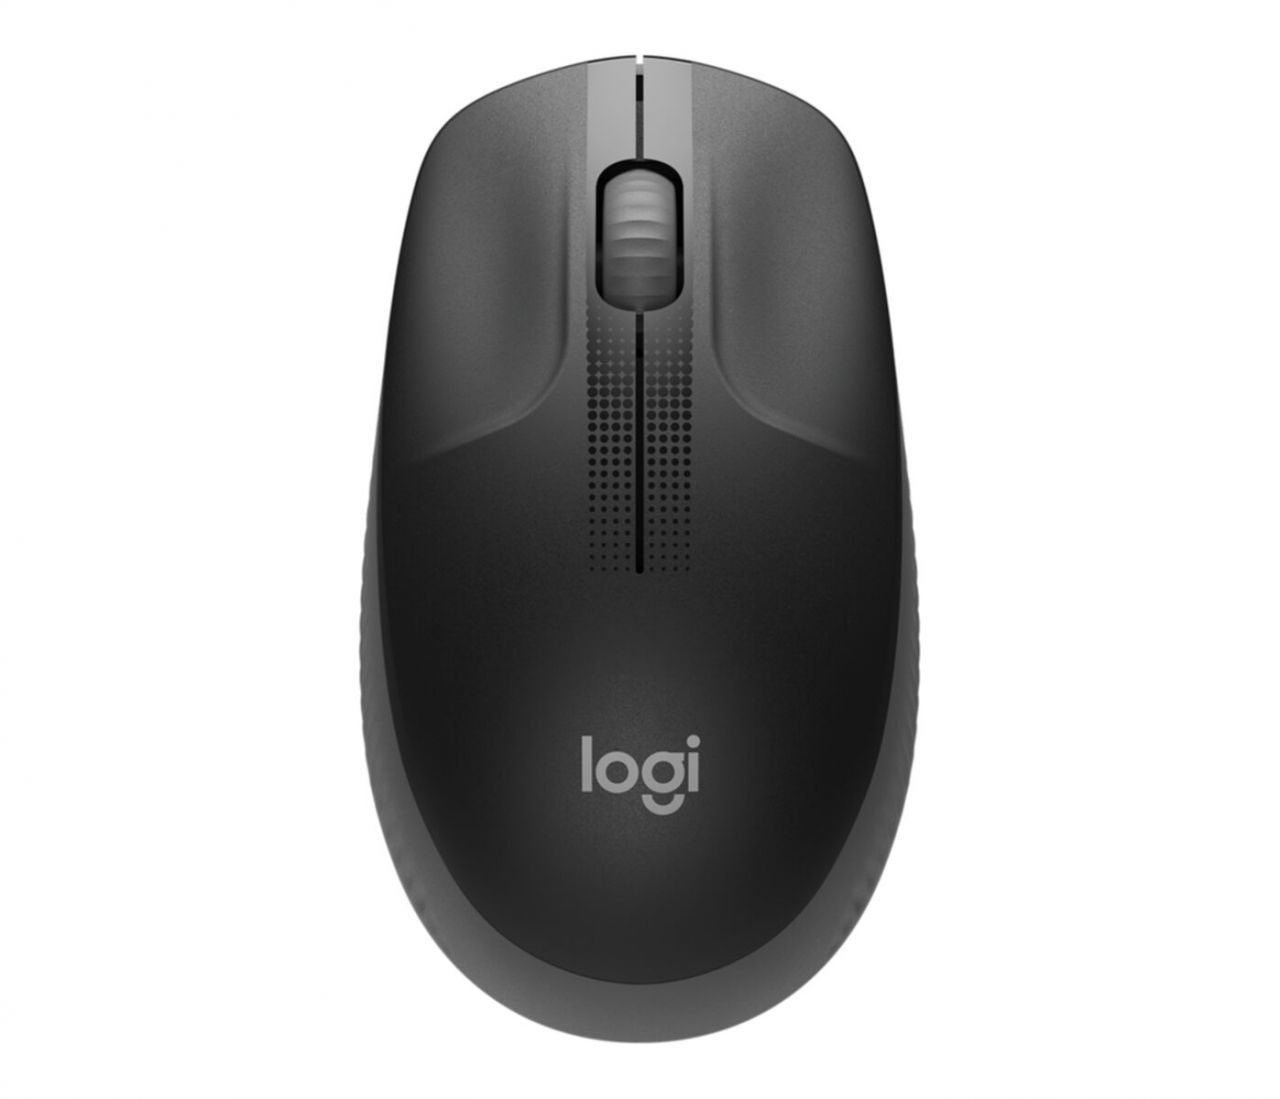 online Logitech Laser-Mäuse | OTTO kaufen